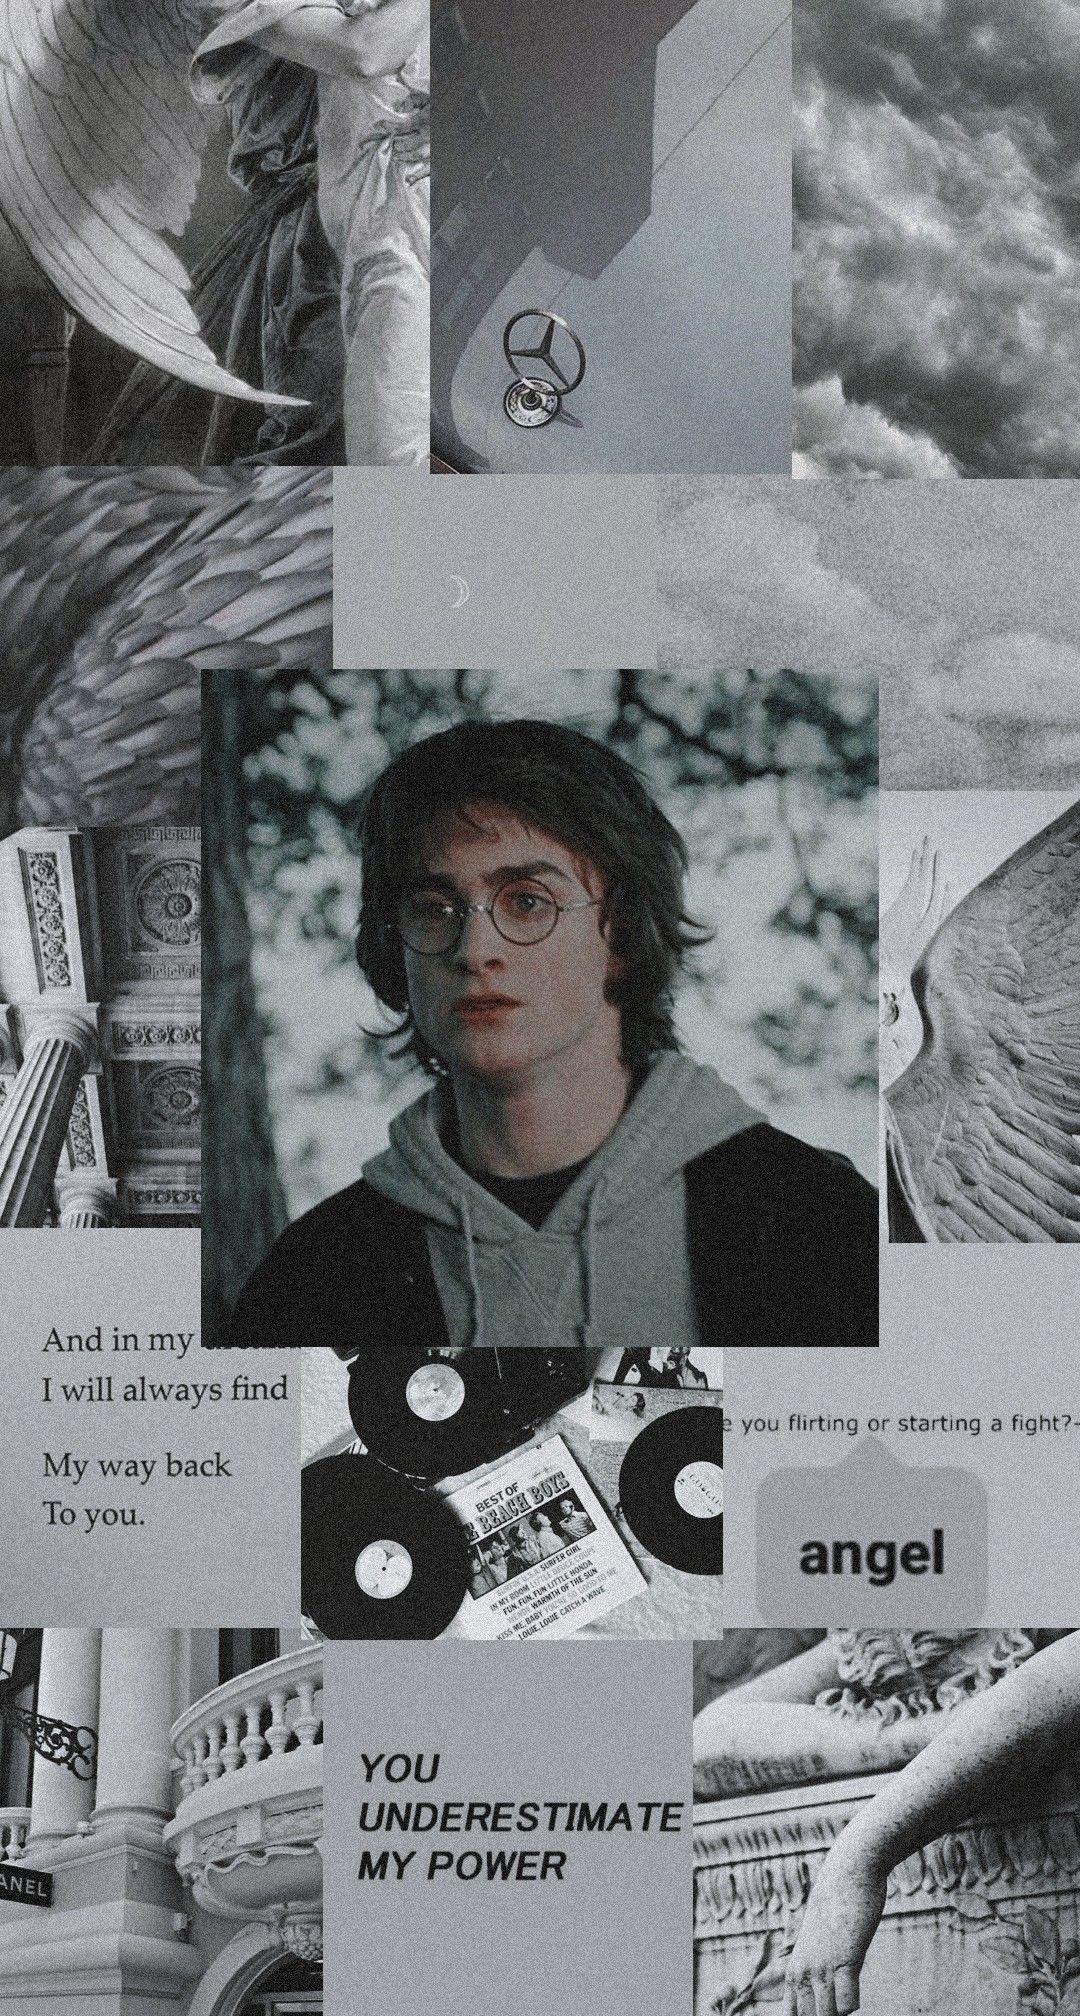 Harry Potter wallpaper aesthetic. Harry potter wallpaper, Harry potter cast, Harry potter